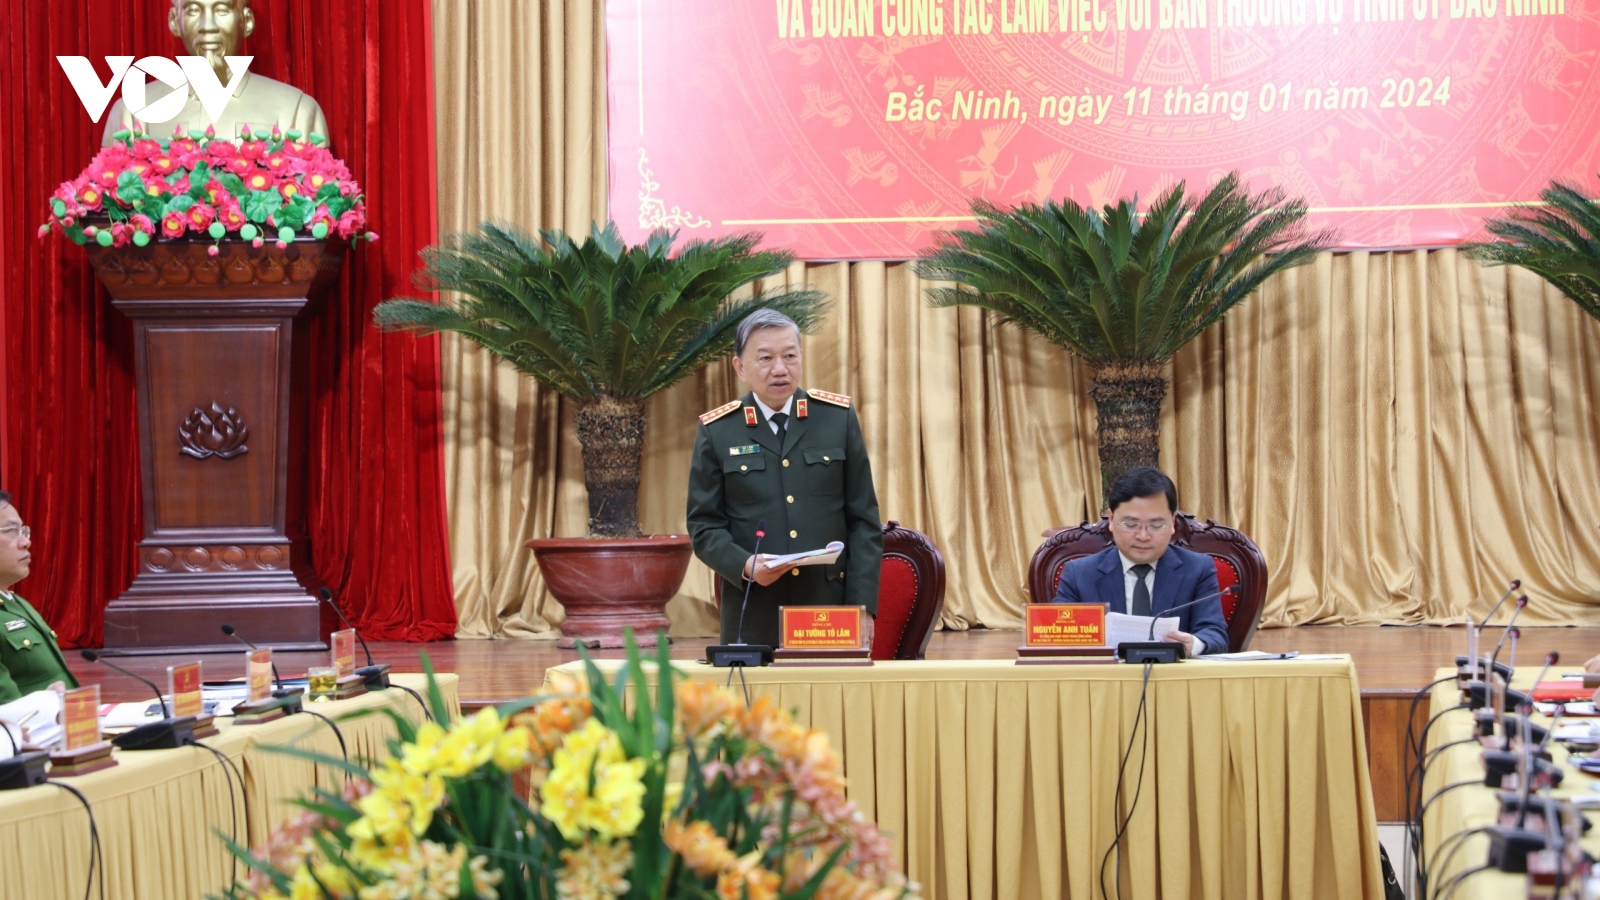 Bộ trưởng Bộ Công an làm việc với tỉnh Bắc Ninh về an toàn giao thông